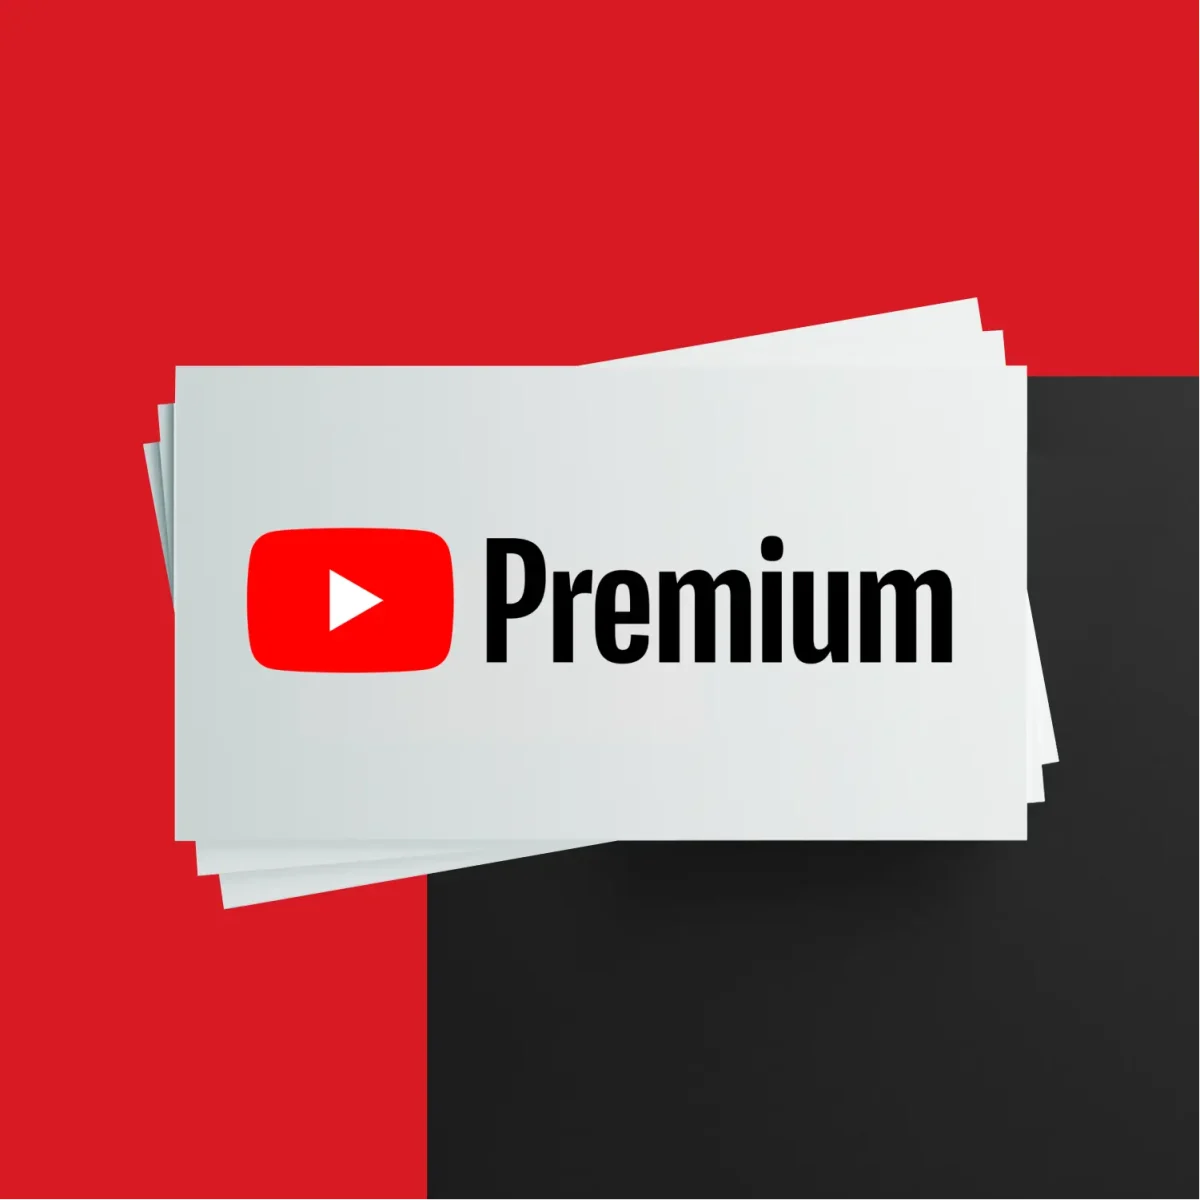 خرید اکانت youtube premium